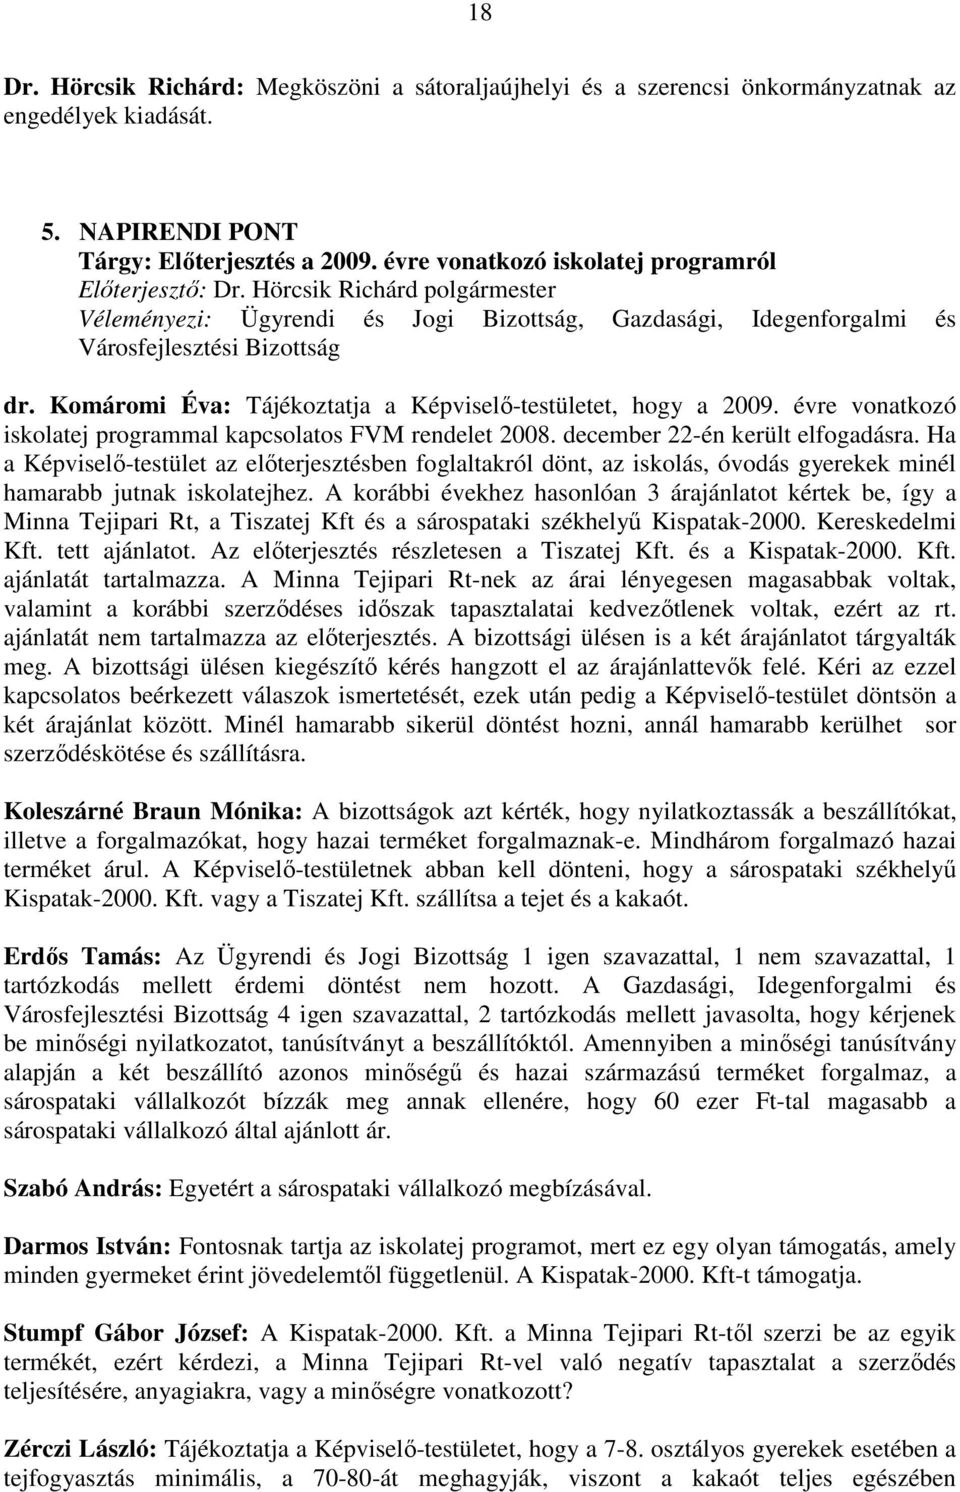 Komáromi Éva: Tájékoztatja a Képviselı-testületet, hogy a 2009. évre vonatkozó iskolatej programmal kapcsolatos FVM rendelet 2008. december 22-én került elfogadásra.